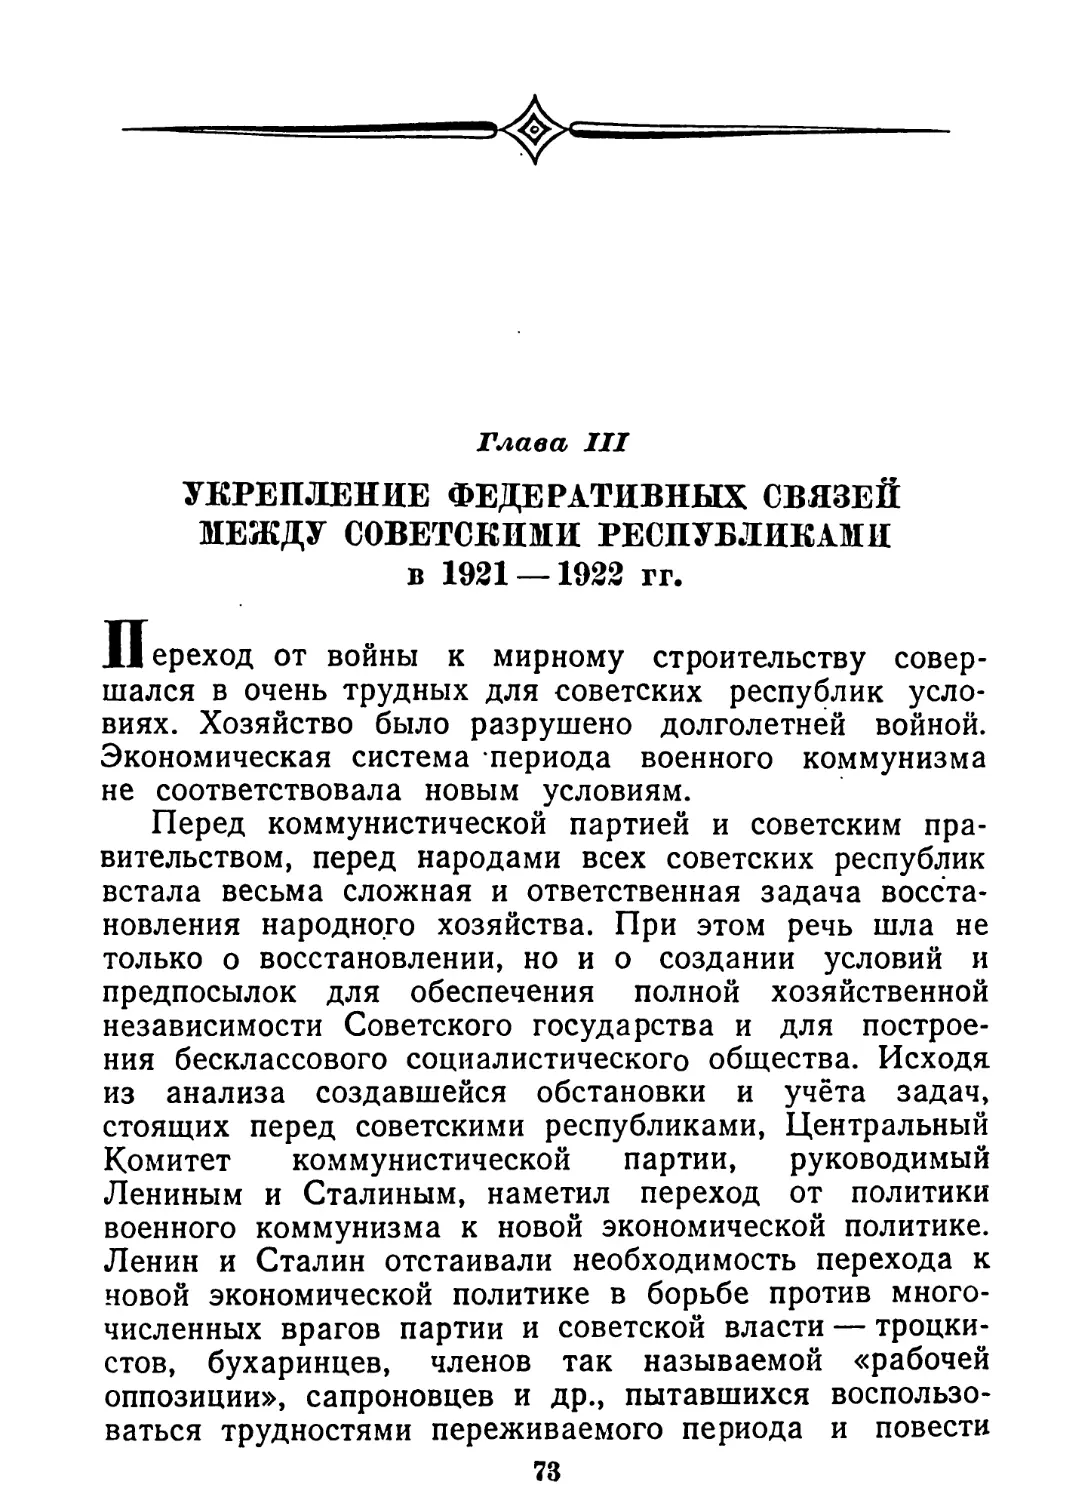 Глава III. Укрепление федеративных связей между советскими республиками в 1921—1922 гг